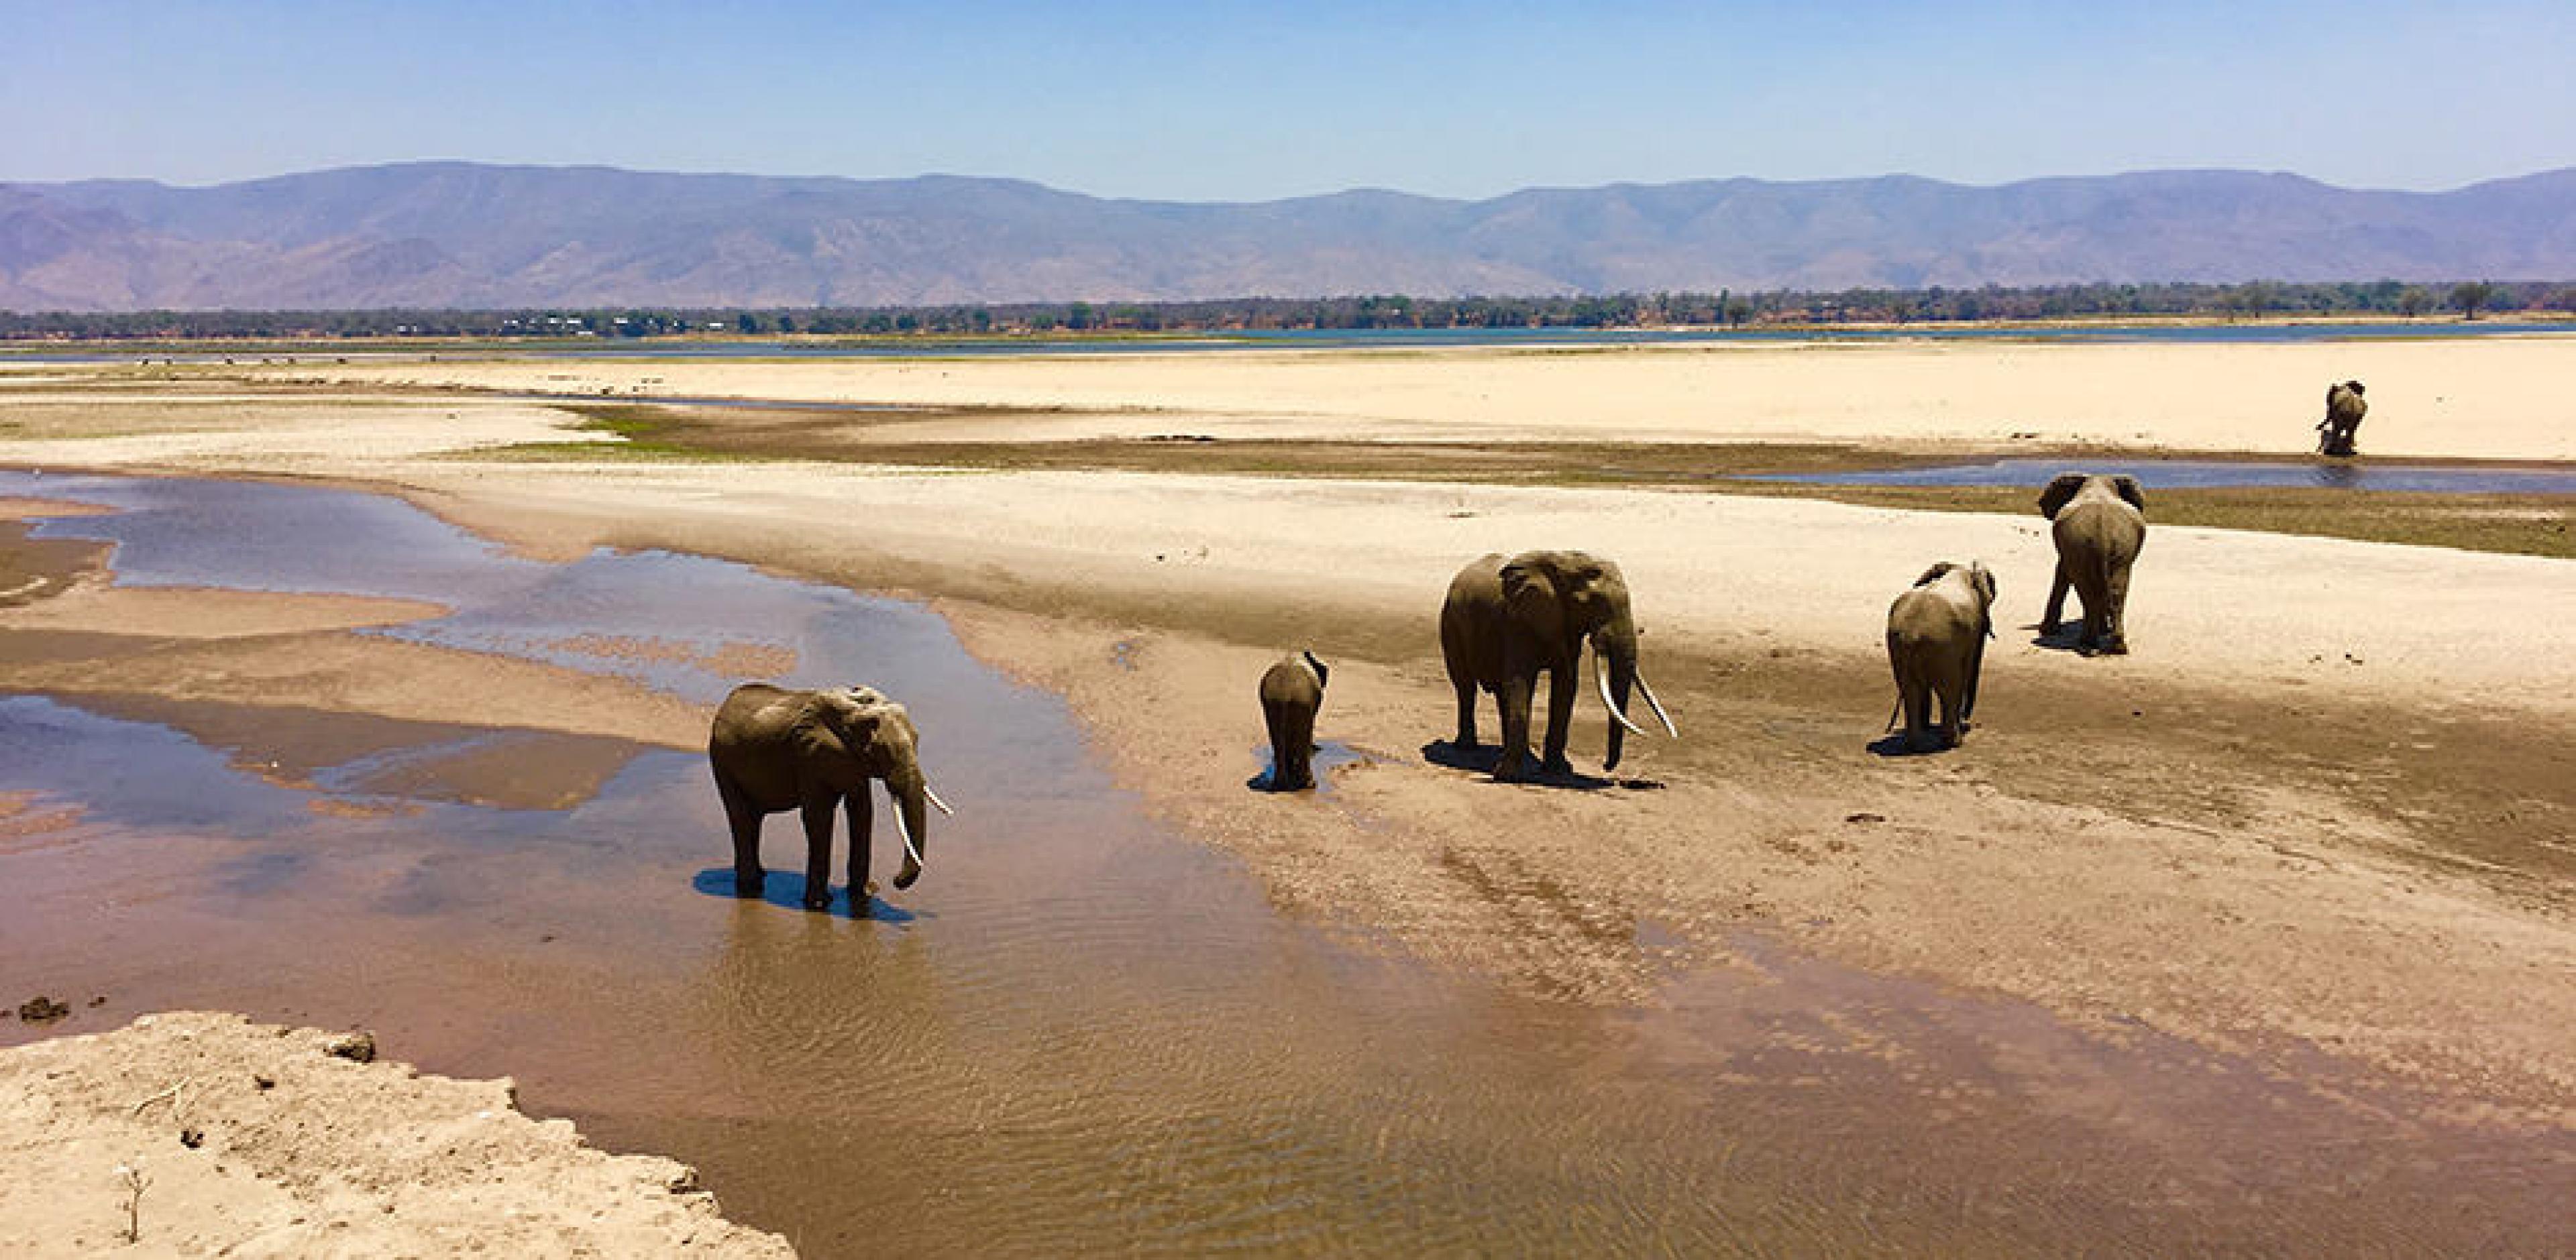 Elephants in the Zambezi flood plains at Mana Pools, Zimbabwe. 